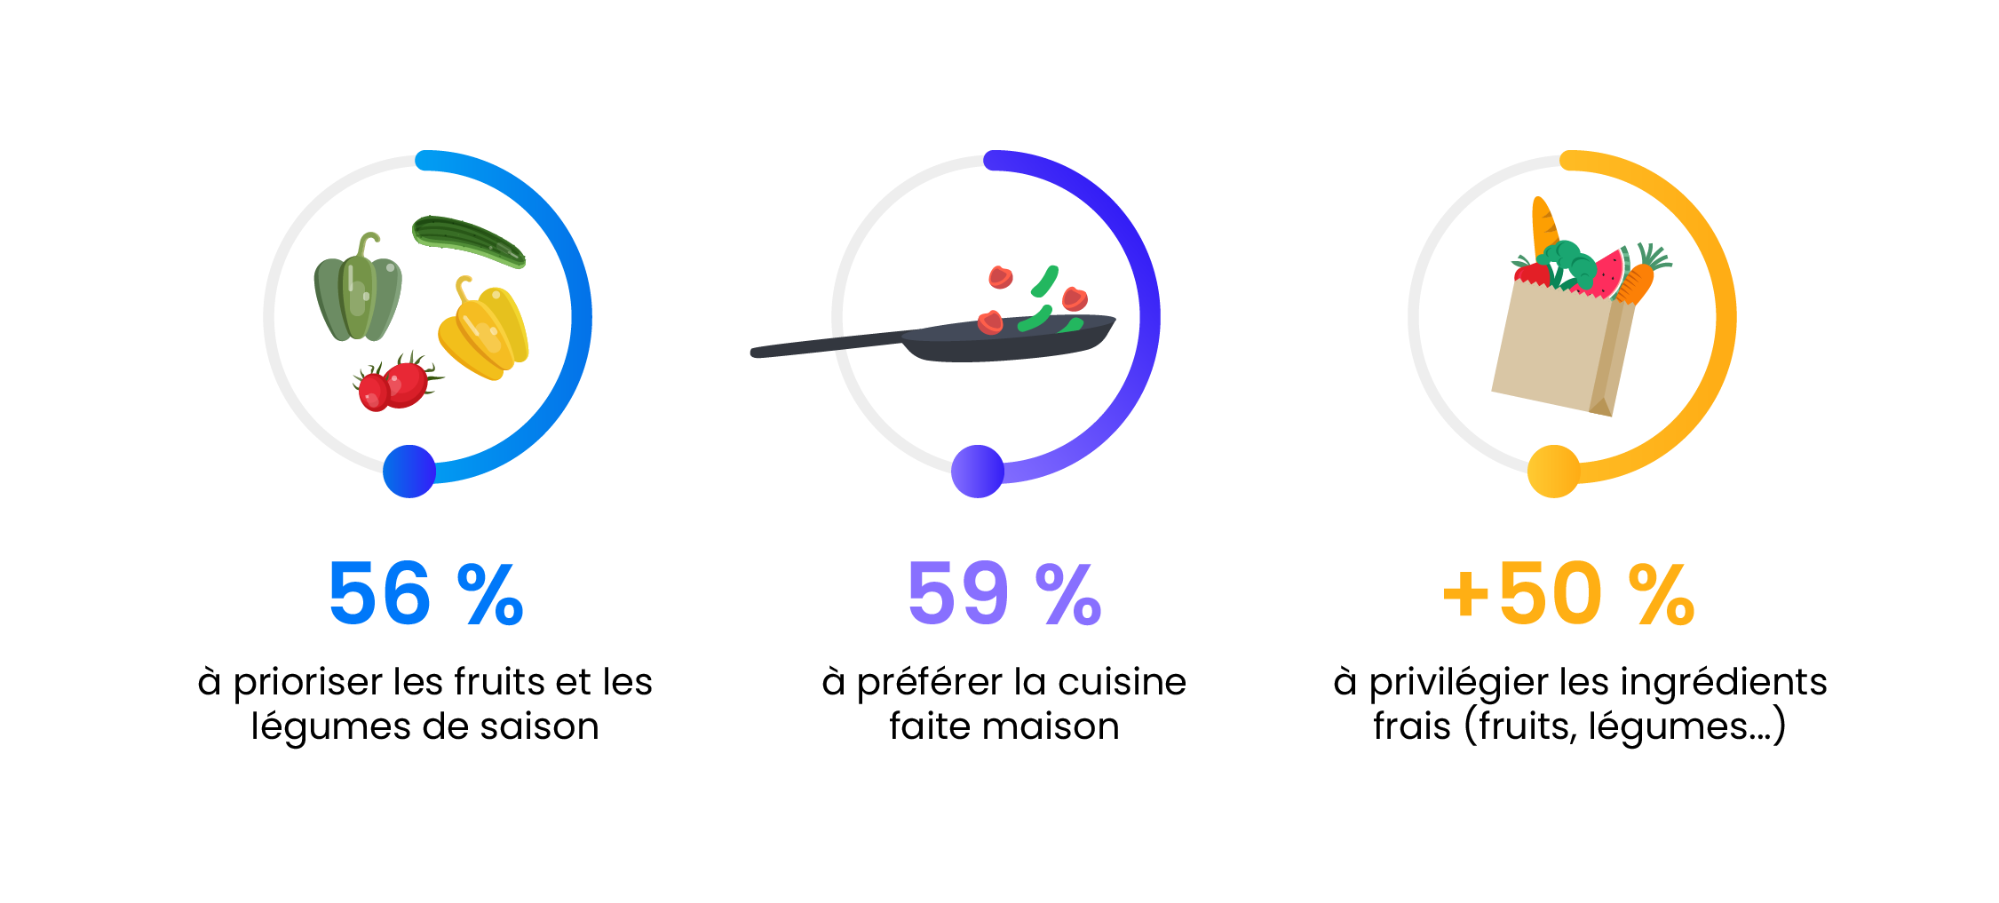 Sondage Ipsos sur la nourriture saine et les habitudes des Français